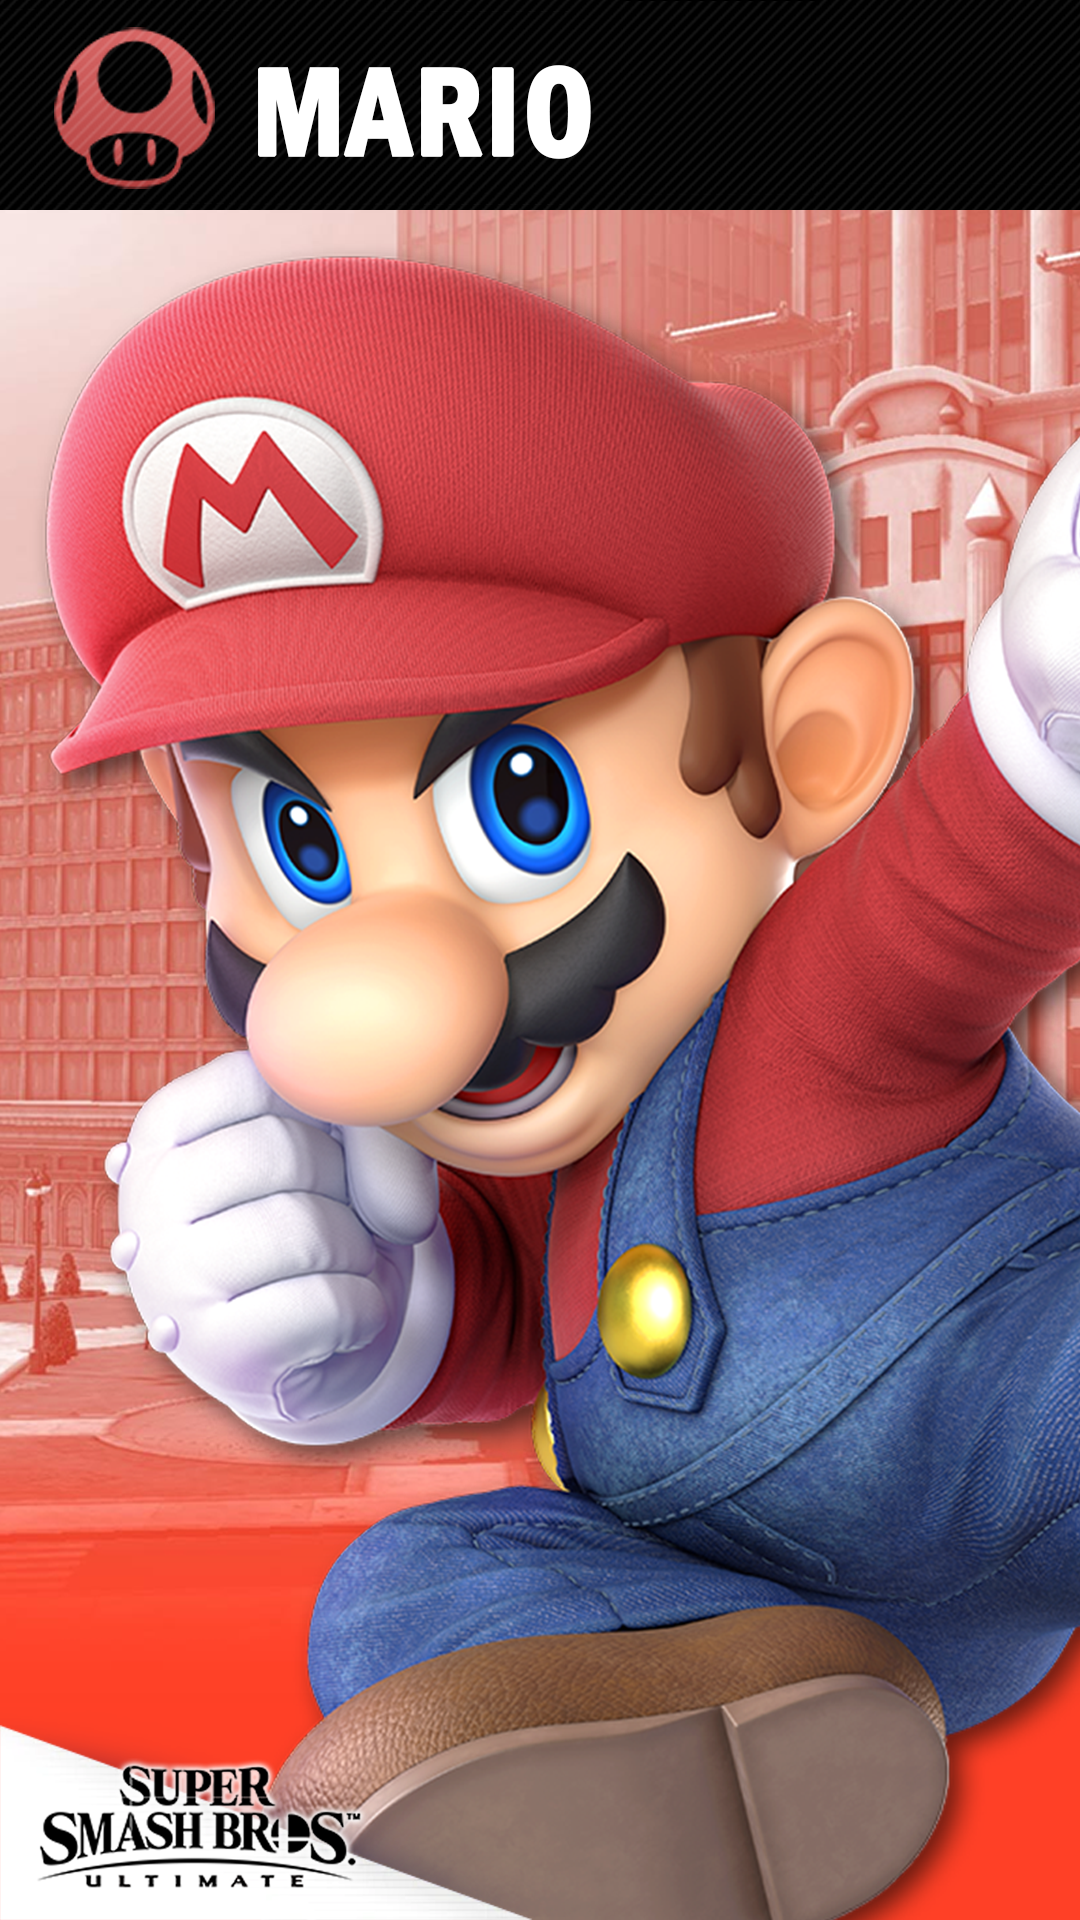 Mario Smash Bros Ultimate - HD Wallpaper 